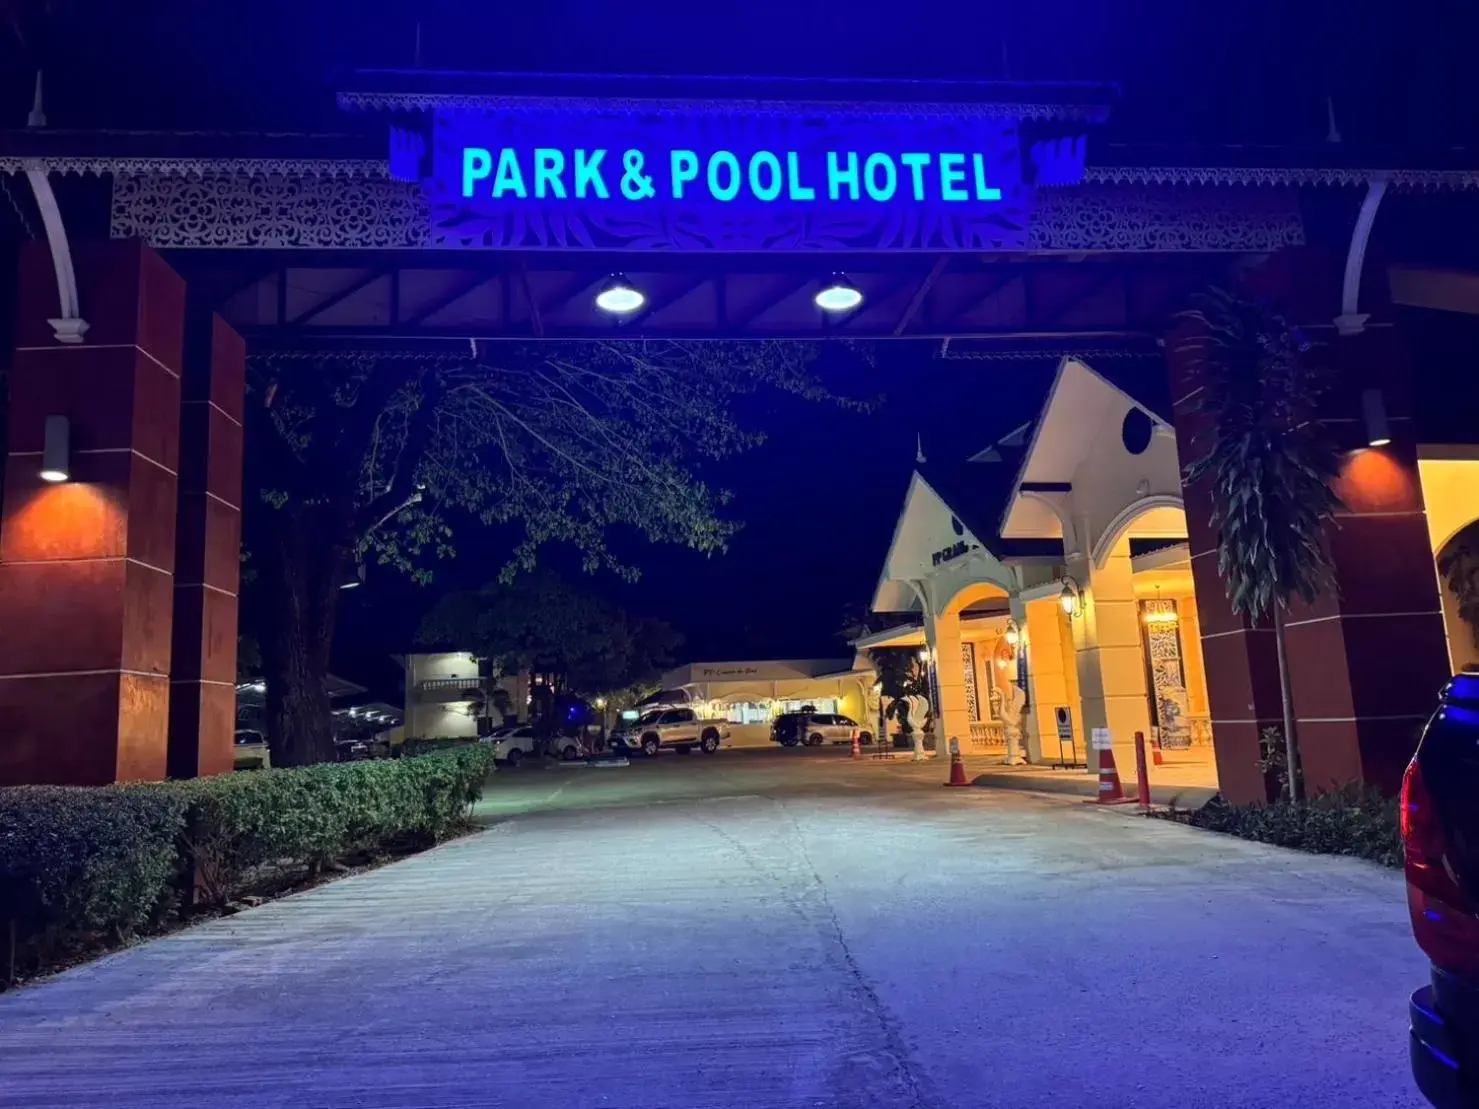 Street view in Park & Pool Resort